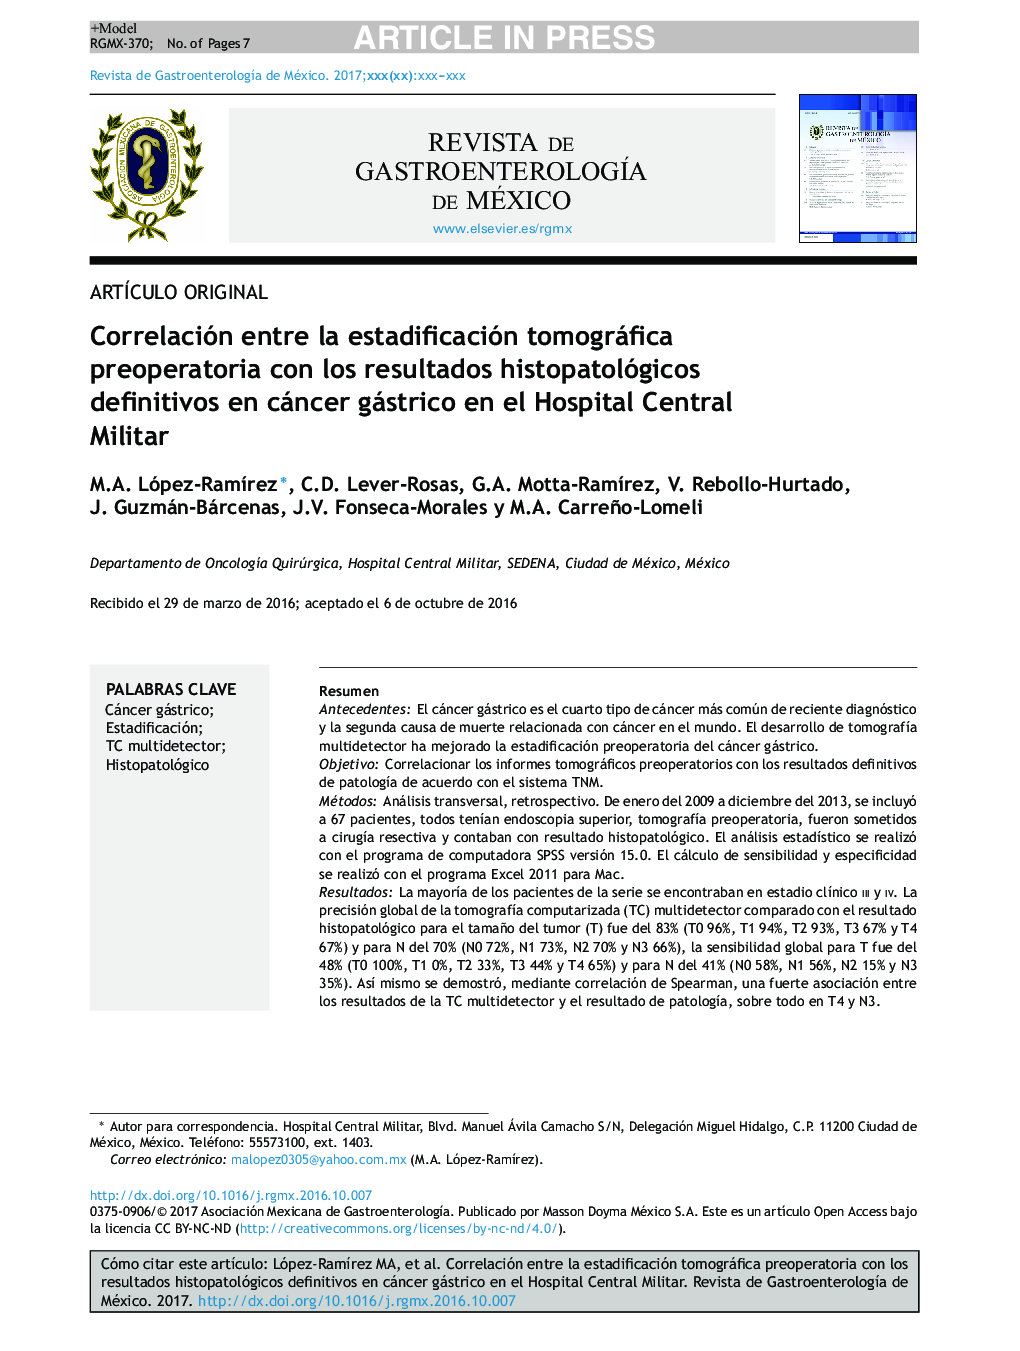 Correlación entre la estadificación tomográfica preoperatoria con los resultados histopatológicos definitivos en cáncer gástrico en el Hospital Central Militar